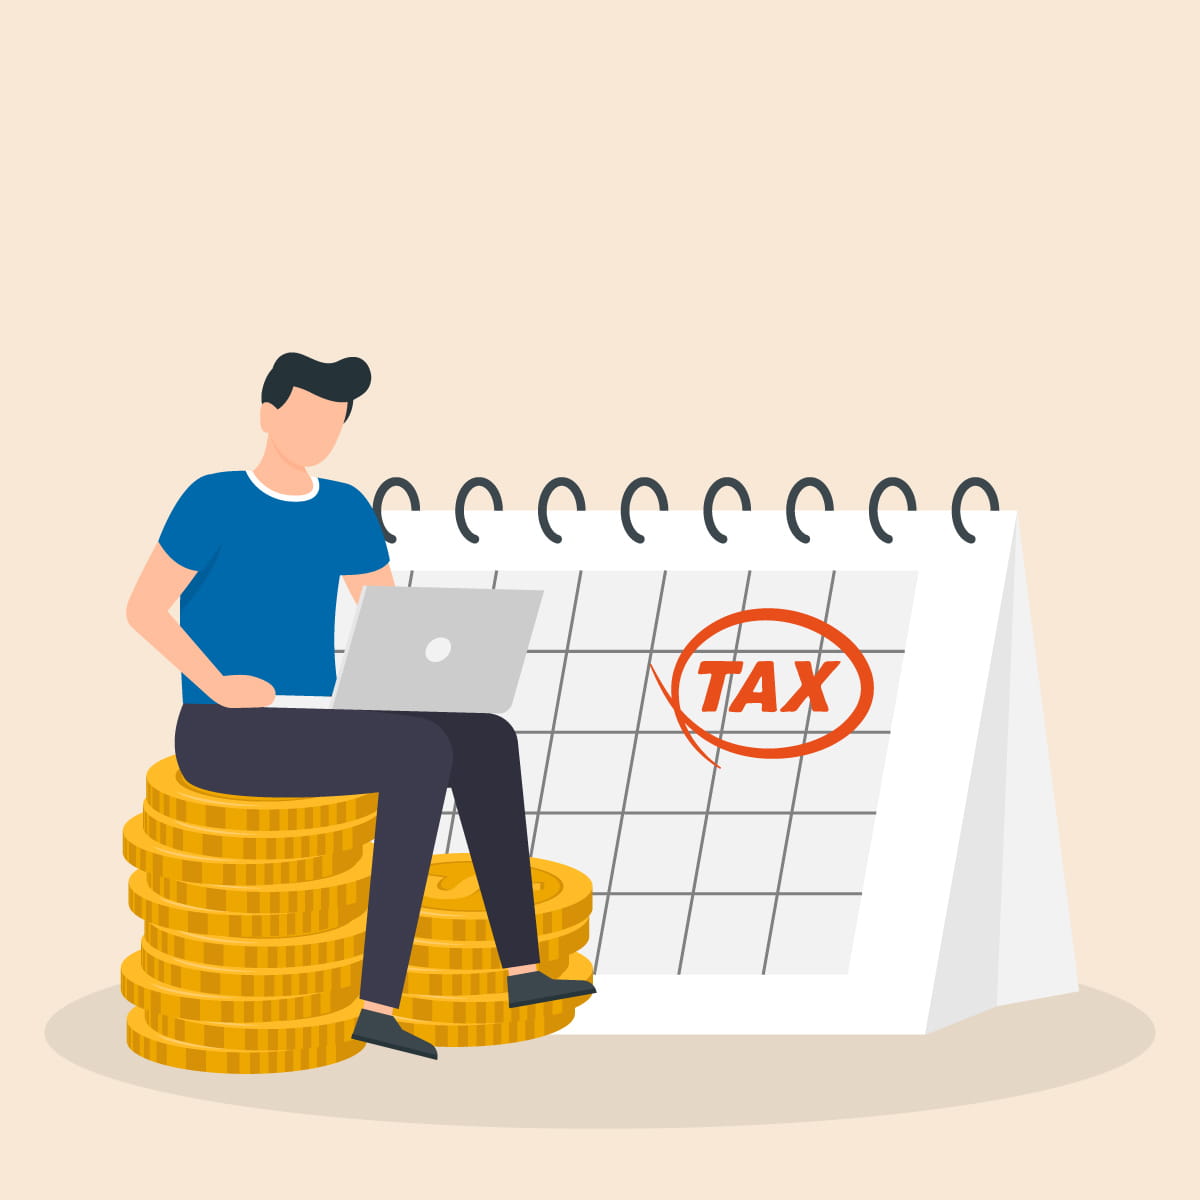 Изображение для статьи "Как платить меньше налогов без претензий со стороны ФНС"